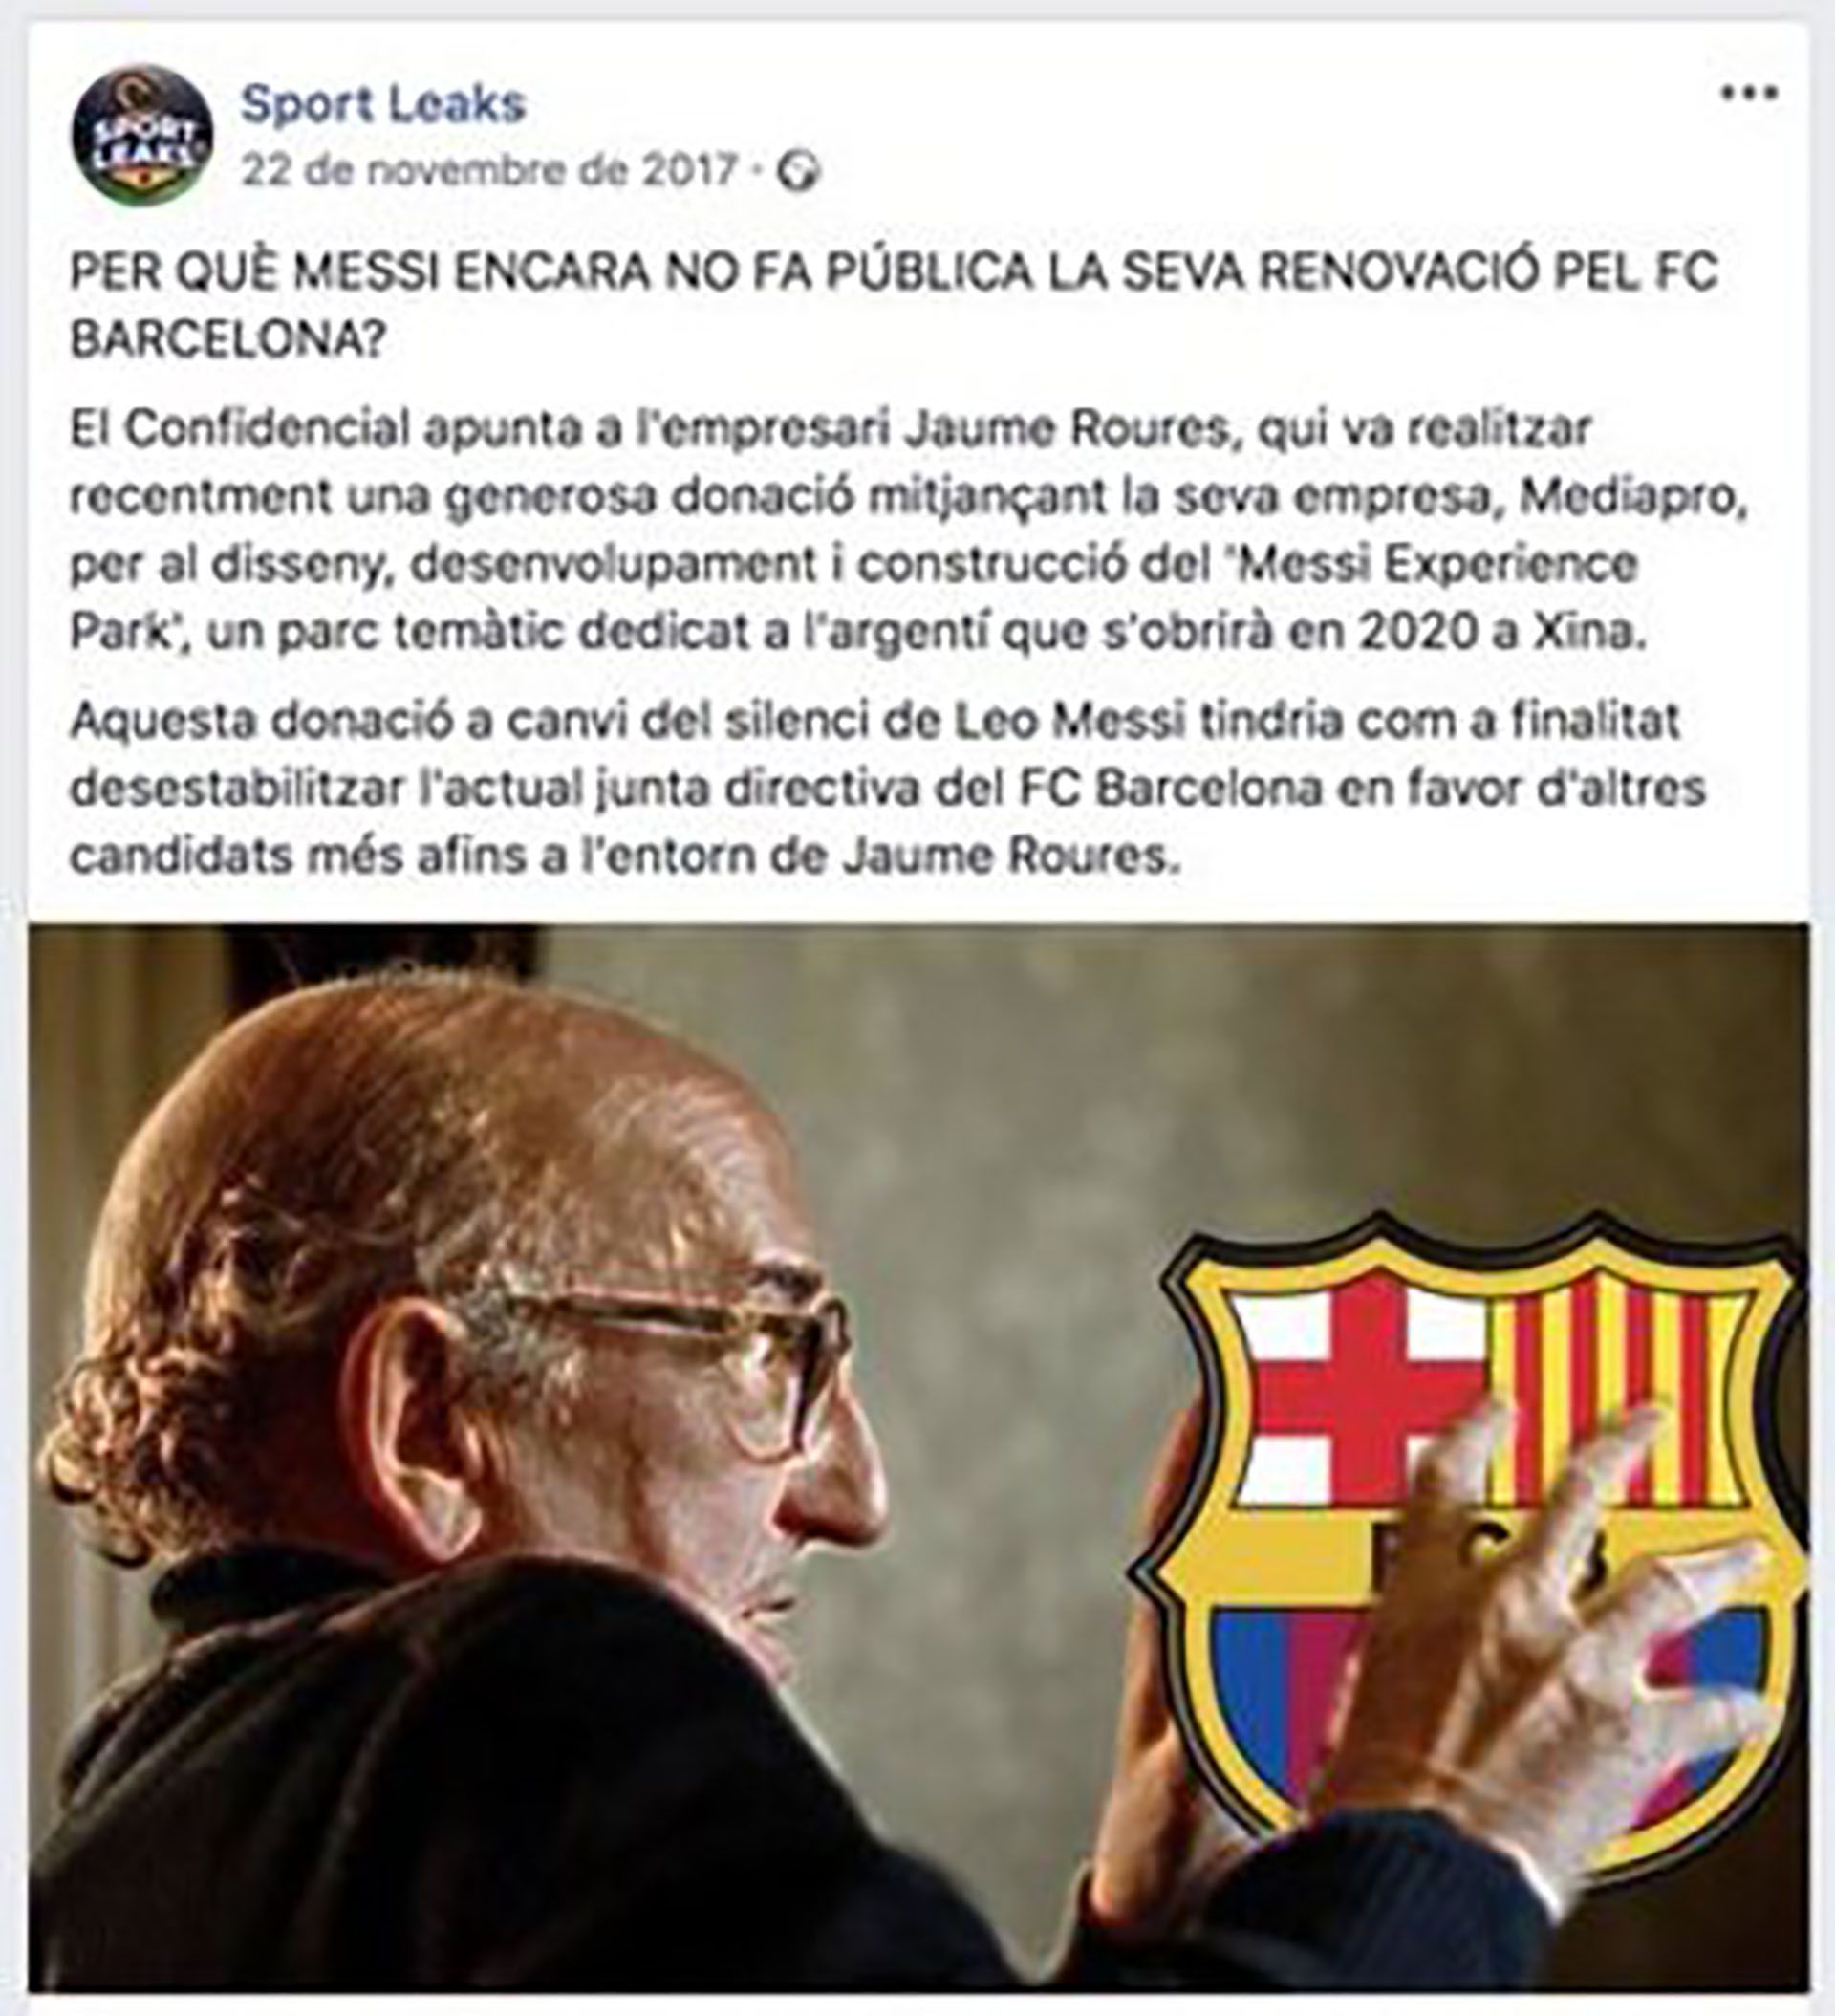 La fake news de Messi en catalán